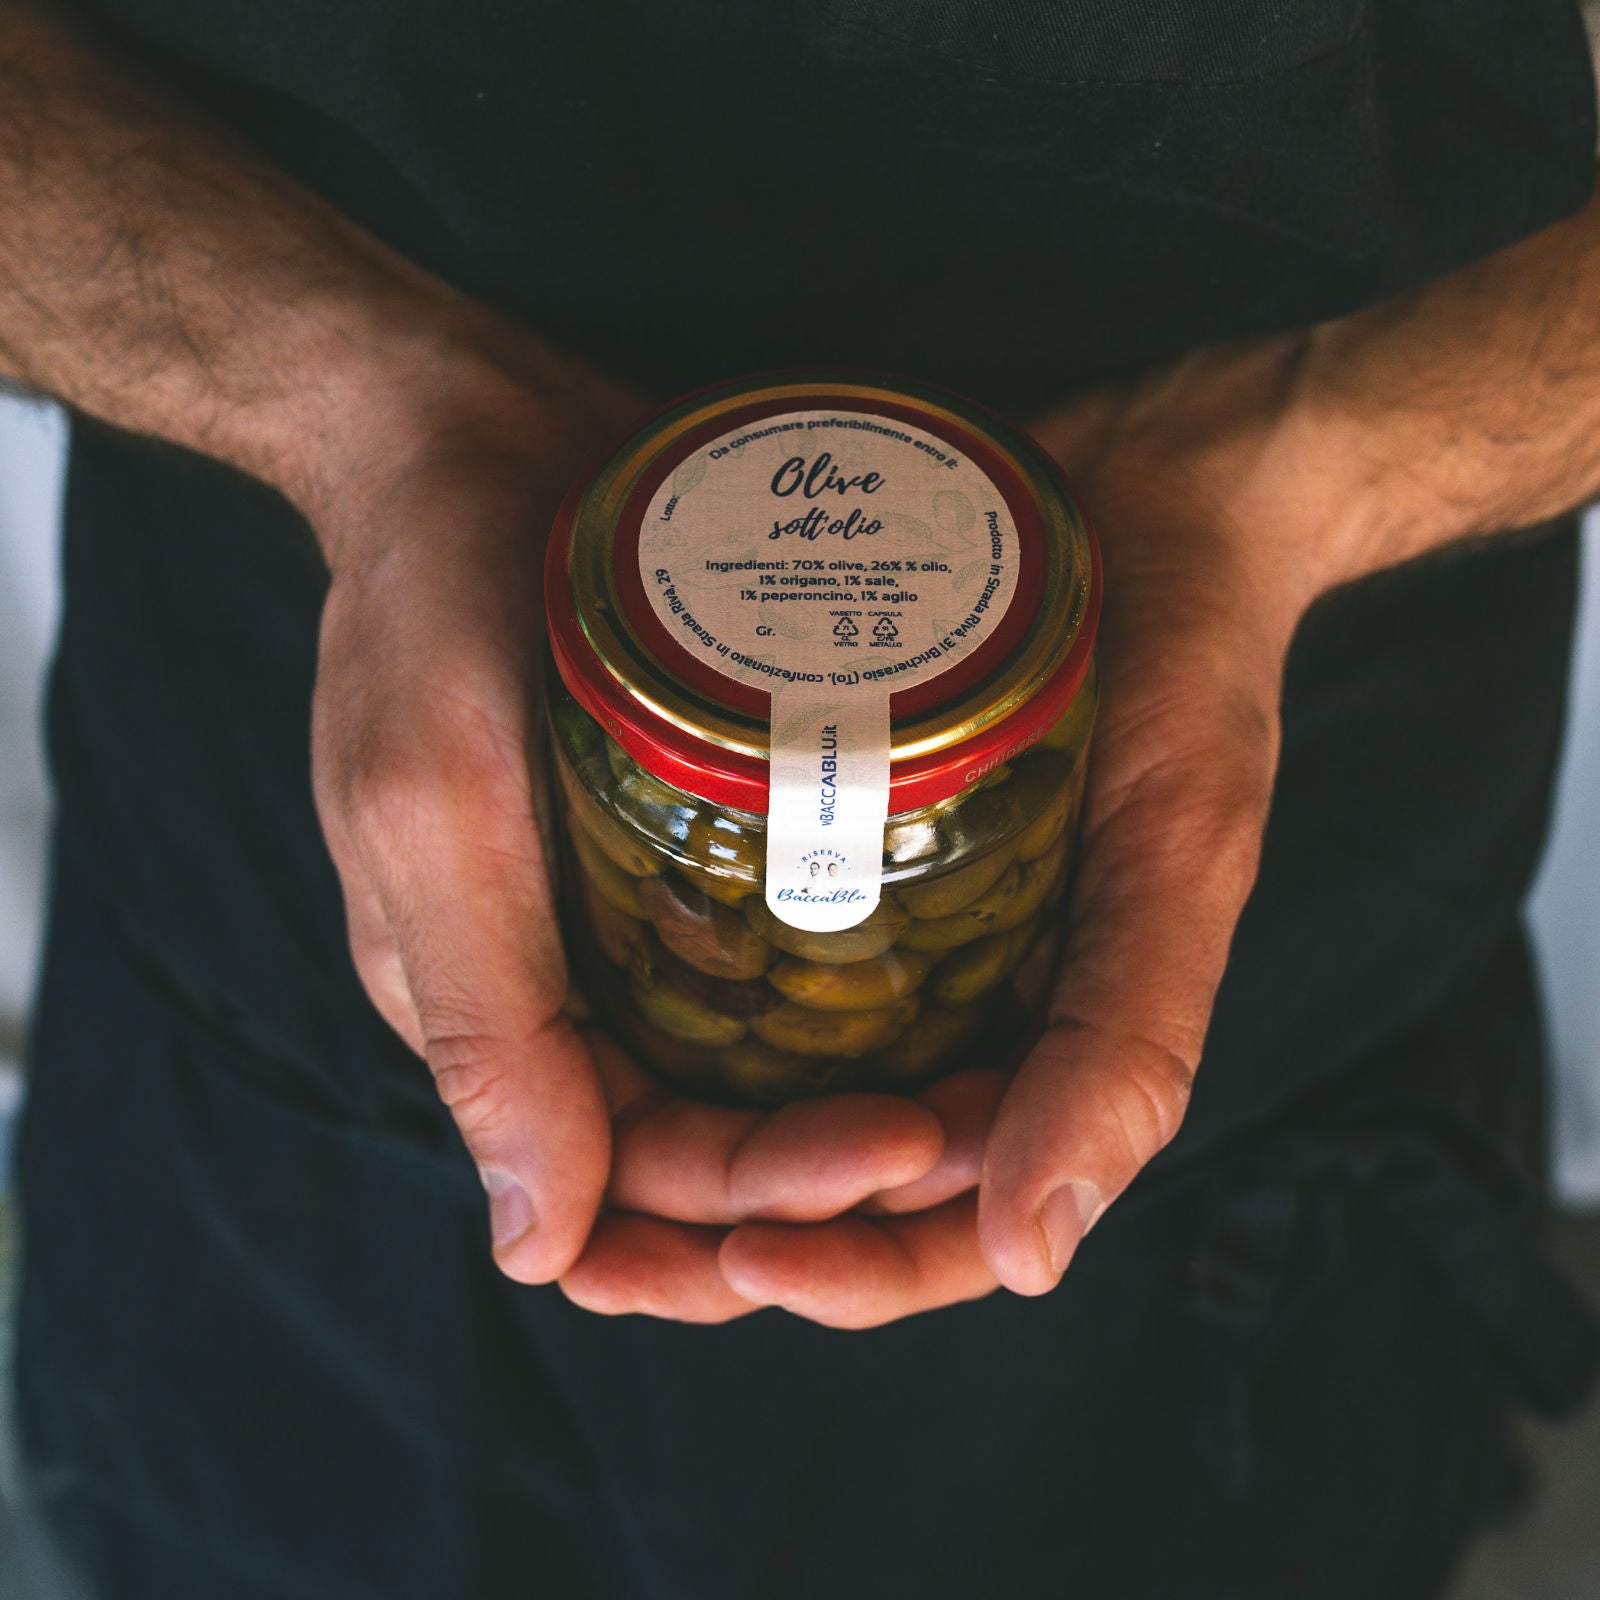 Olive sott'olio della varietà leccino